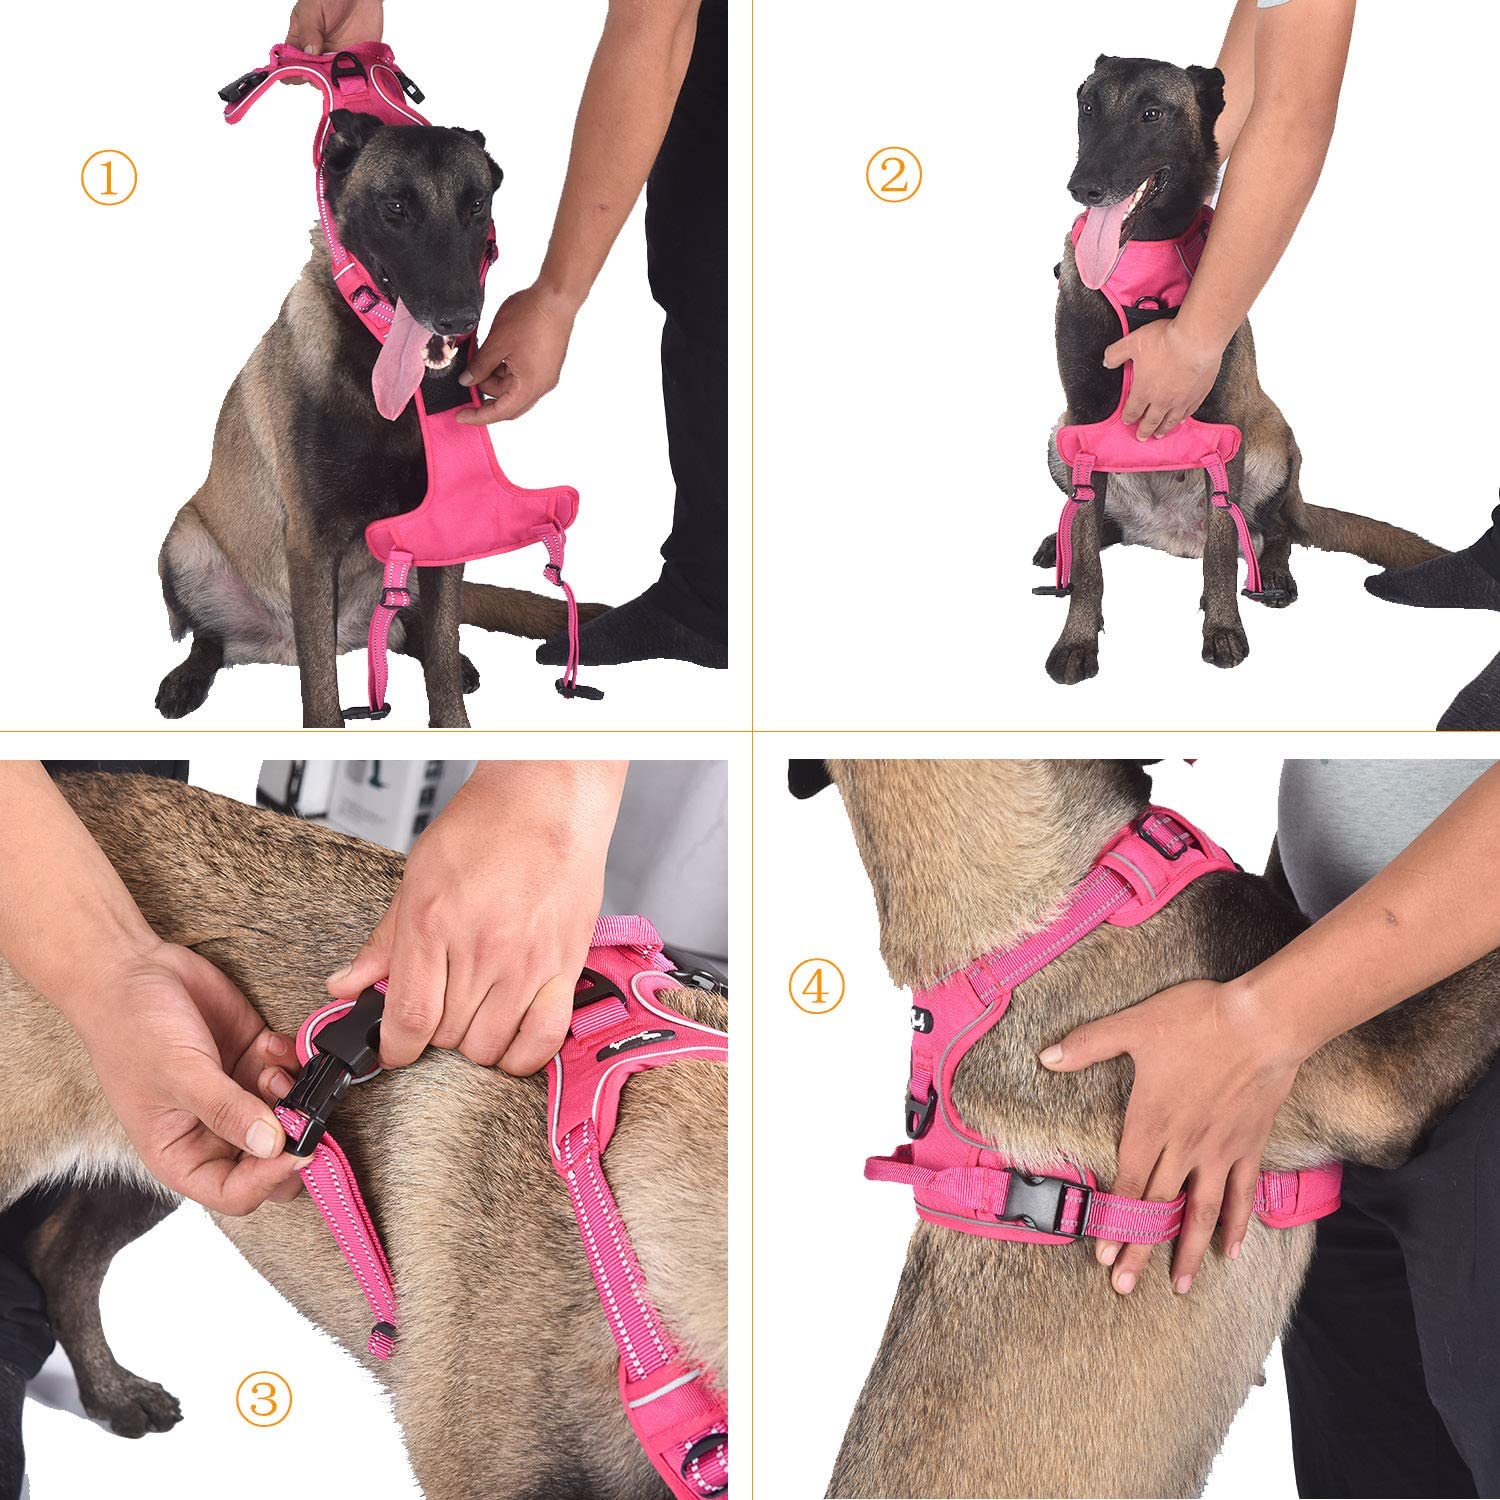  Arnés de perro ajustable de Truelove, de malla suave y transpirable, de nailon reflectante a 3 metros, para perros pequeños, medianos y grandes 